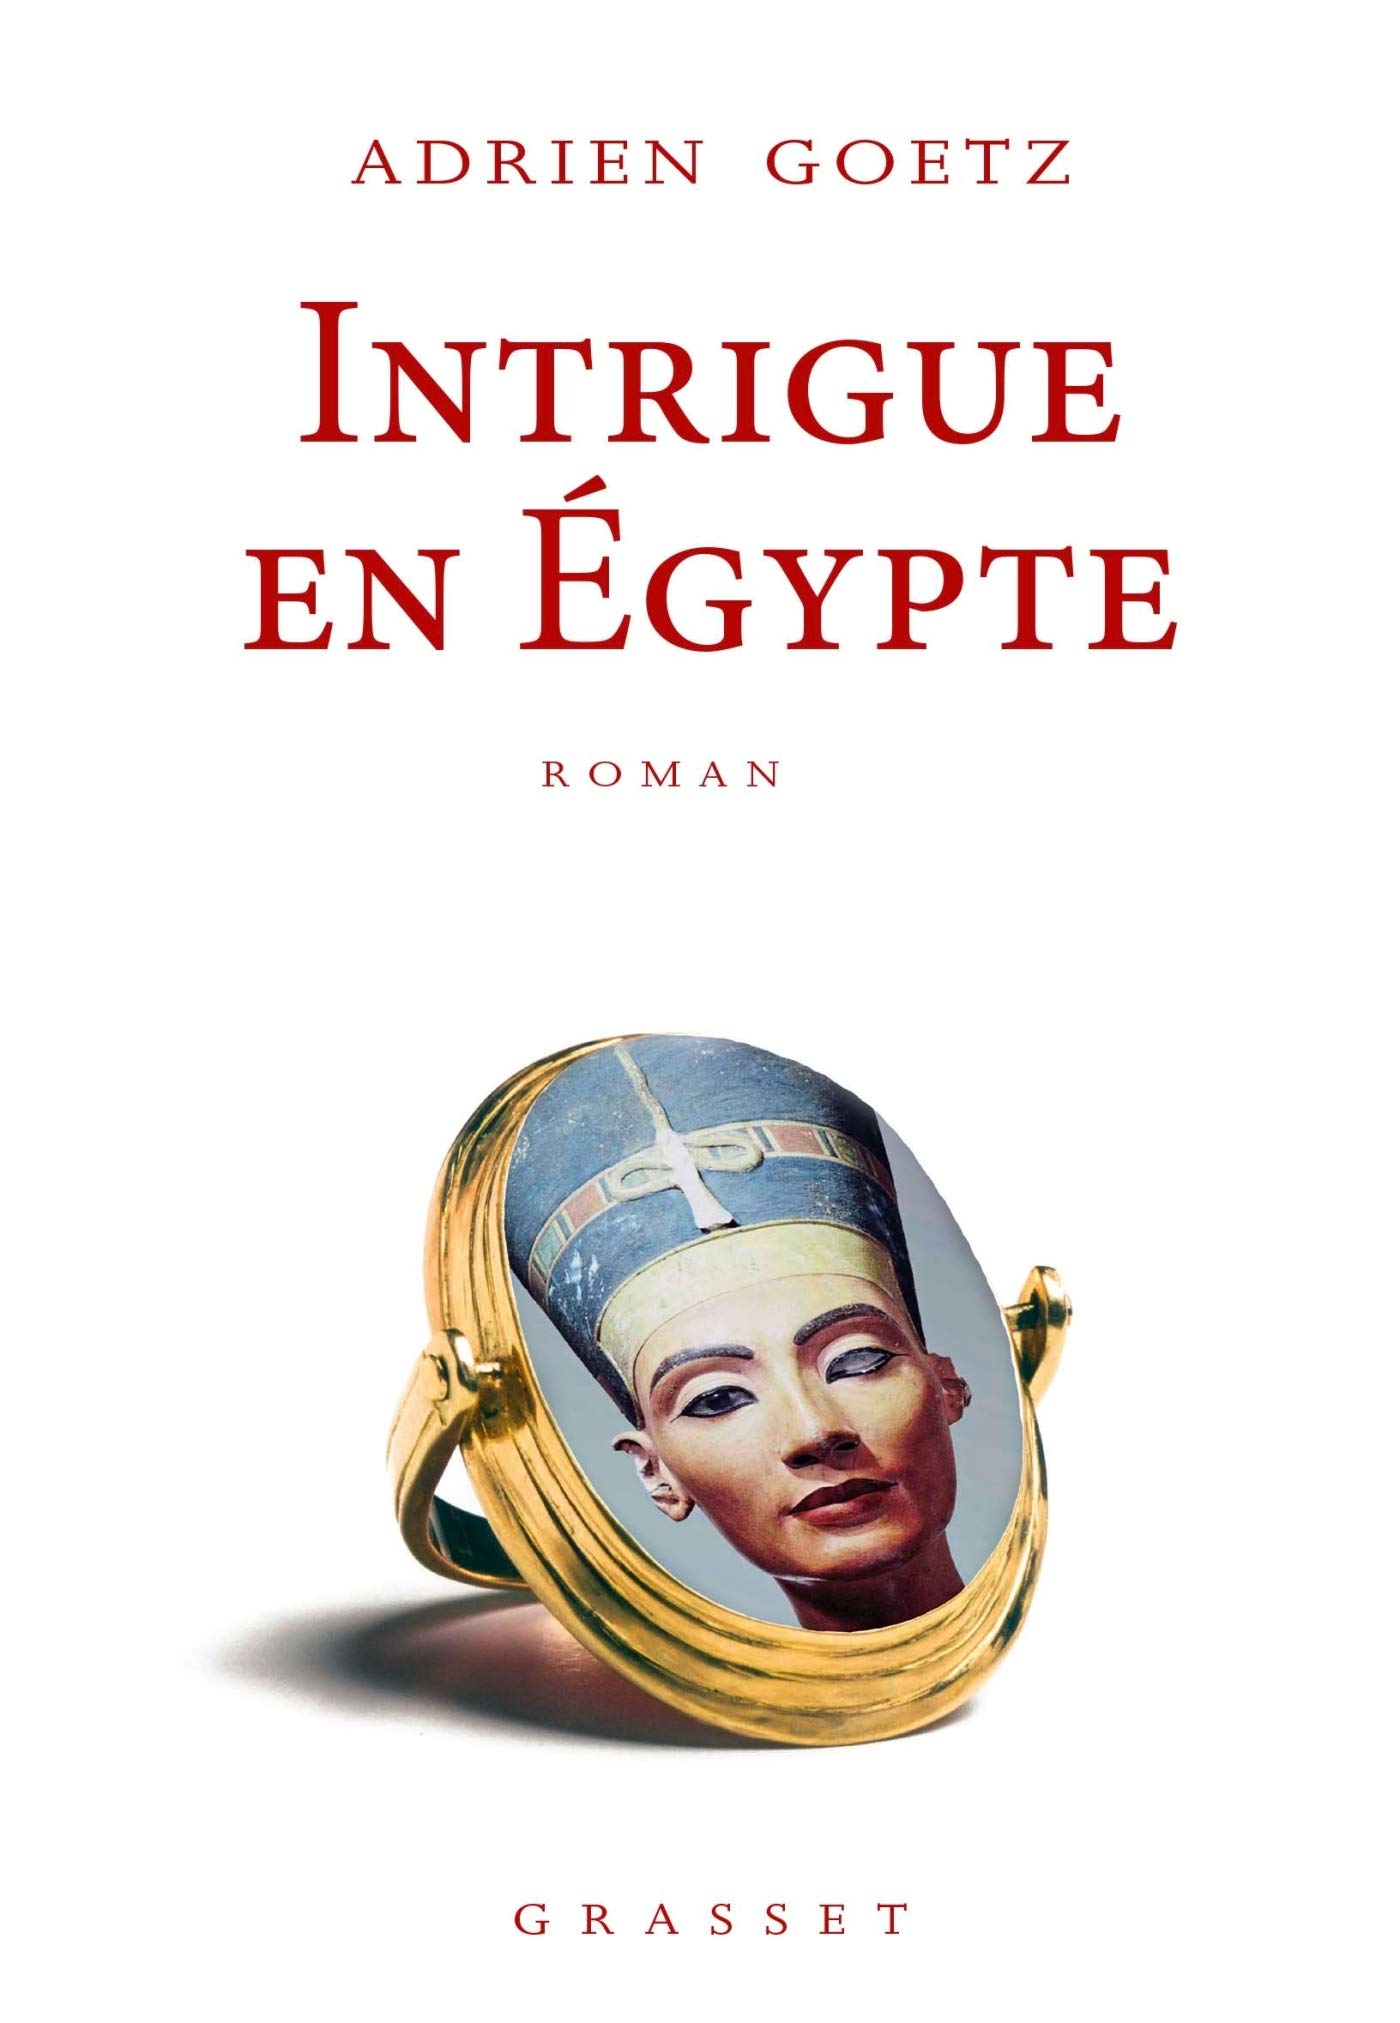 intrigue en égypte couverture livre